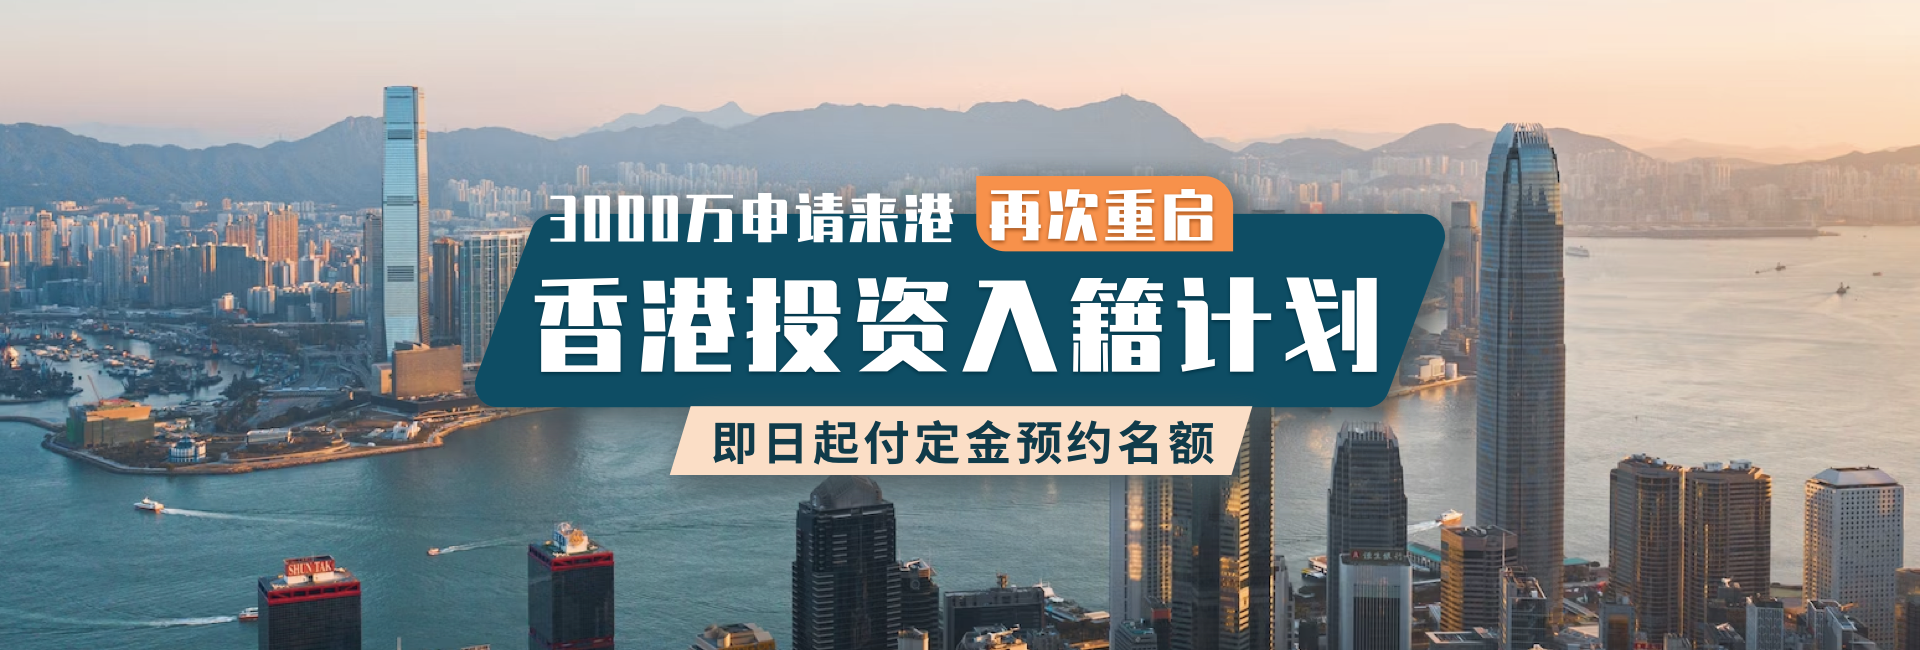 香港投资移民专题banner